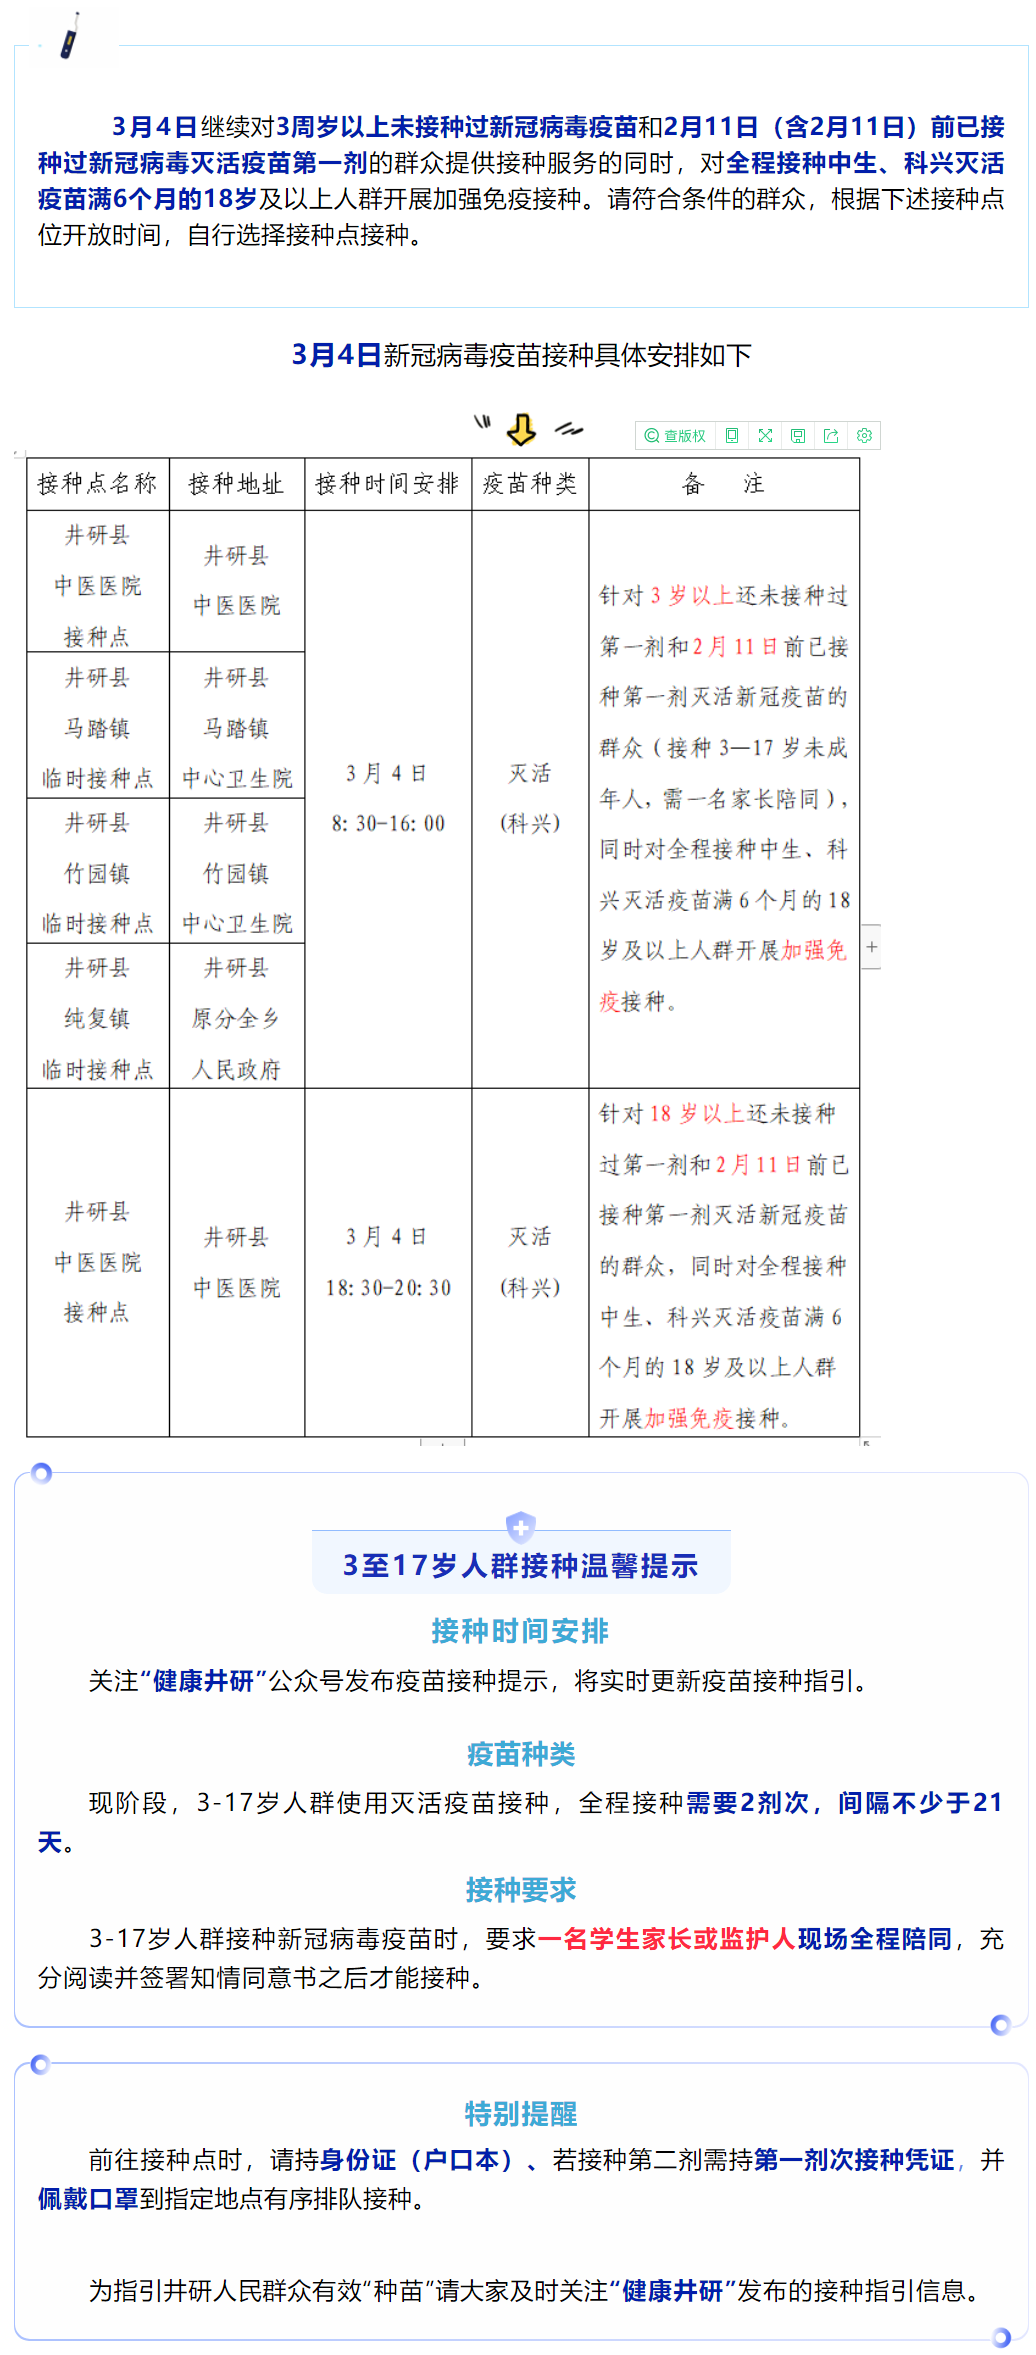 井研县3月4日新冠病毒疫苗接种安排1